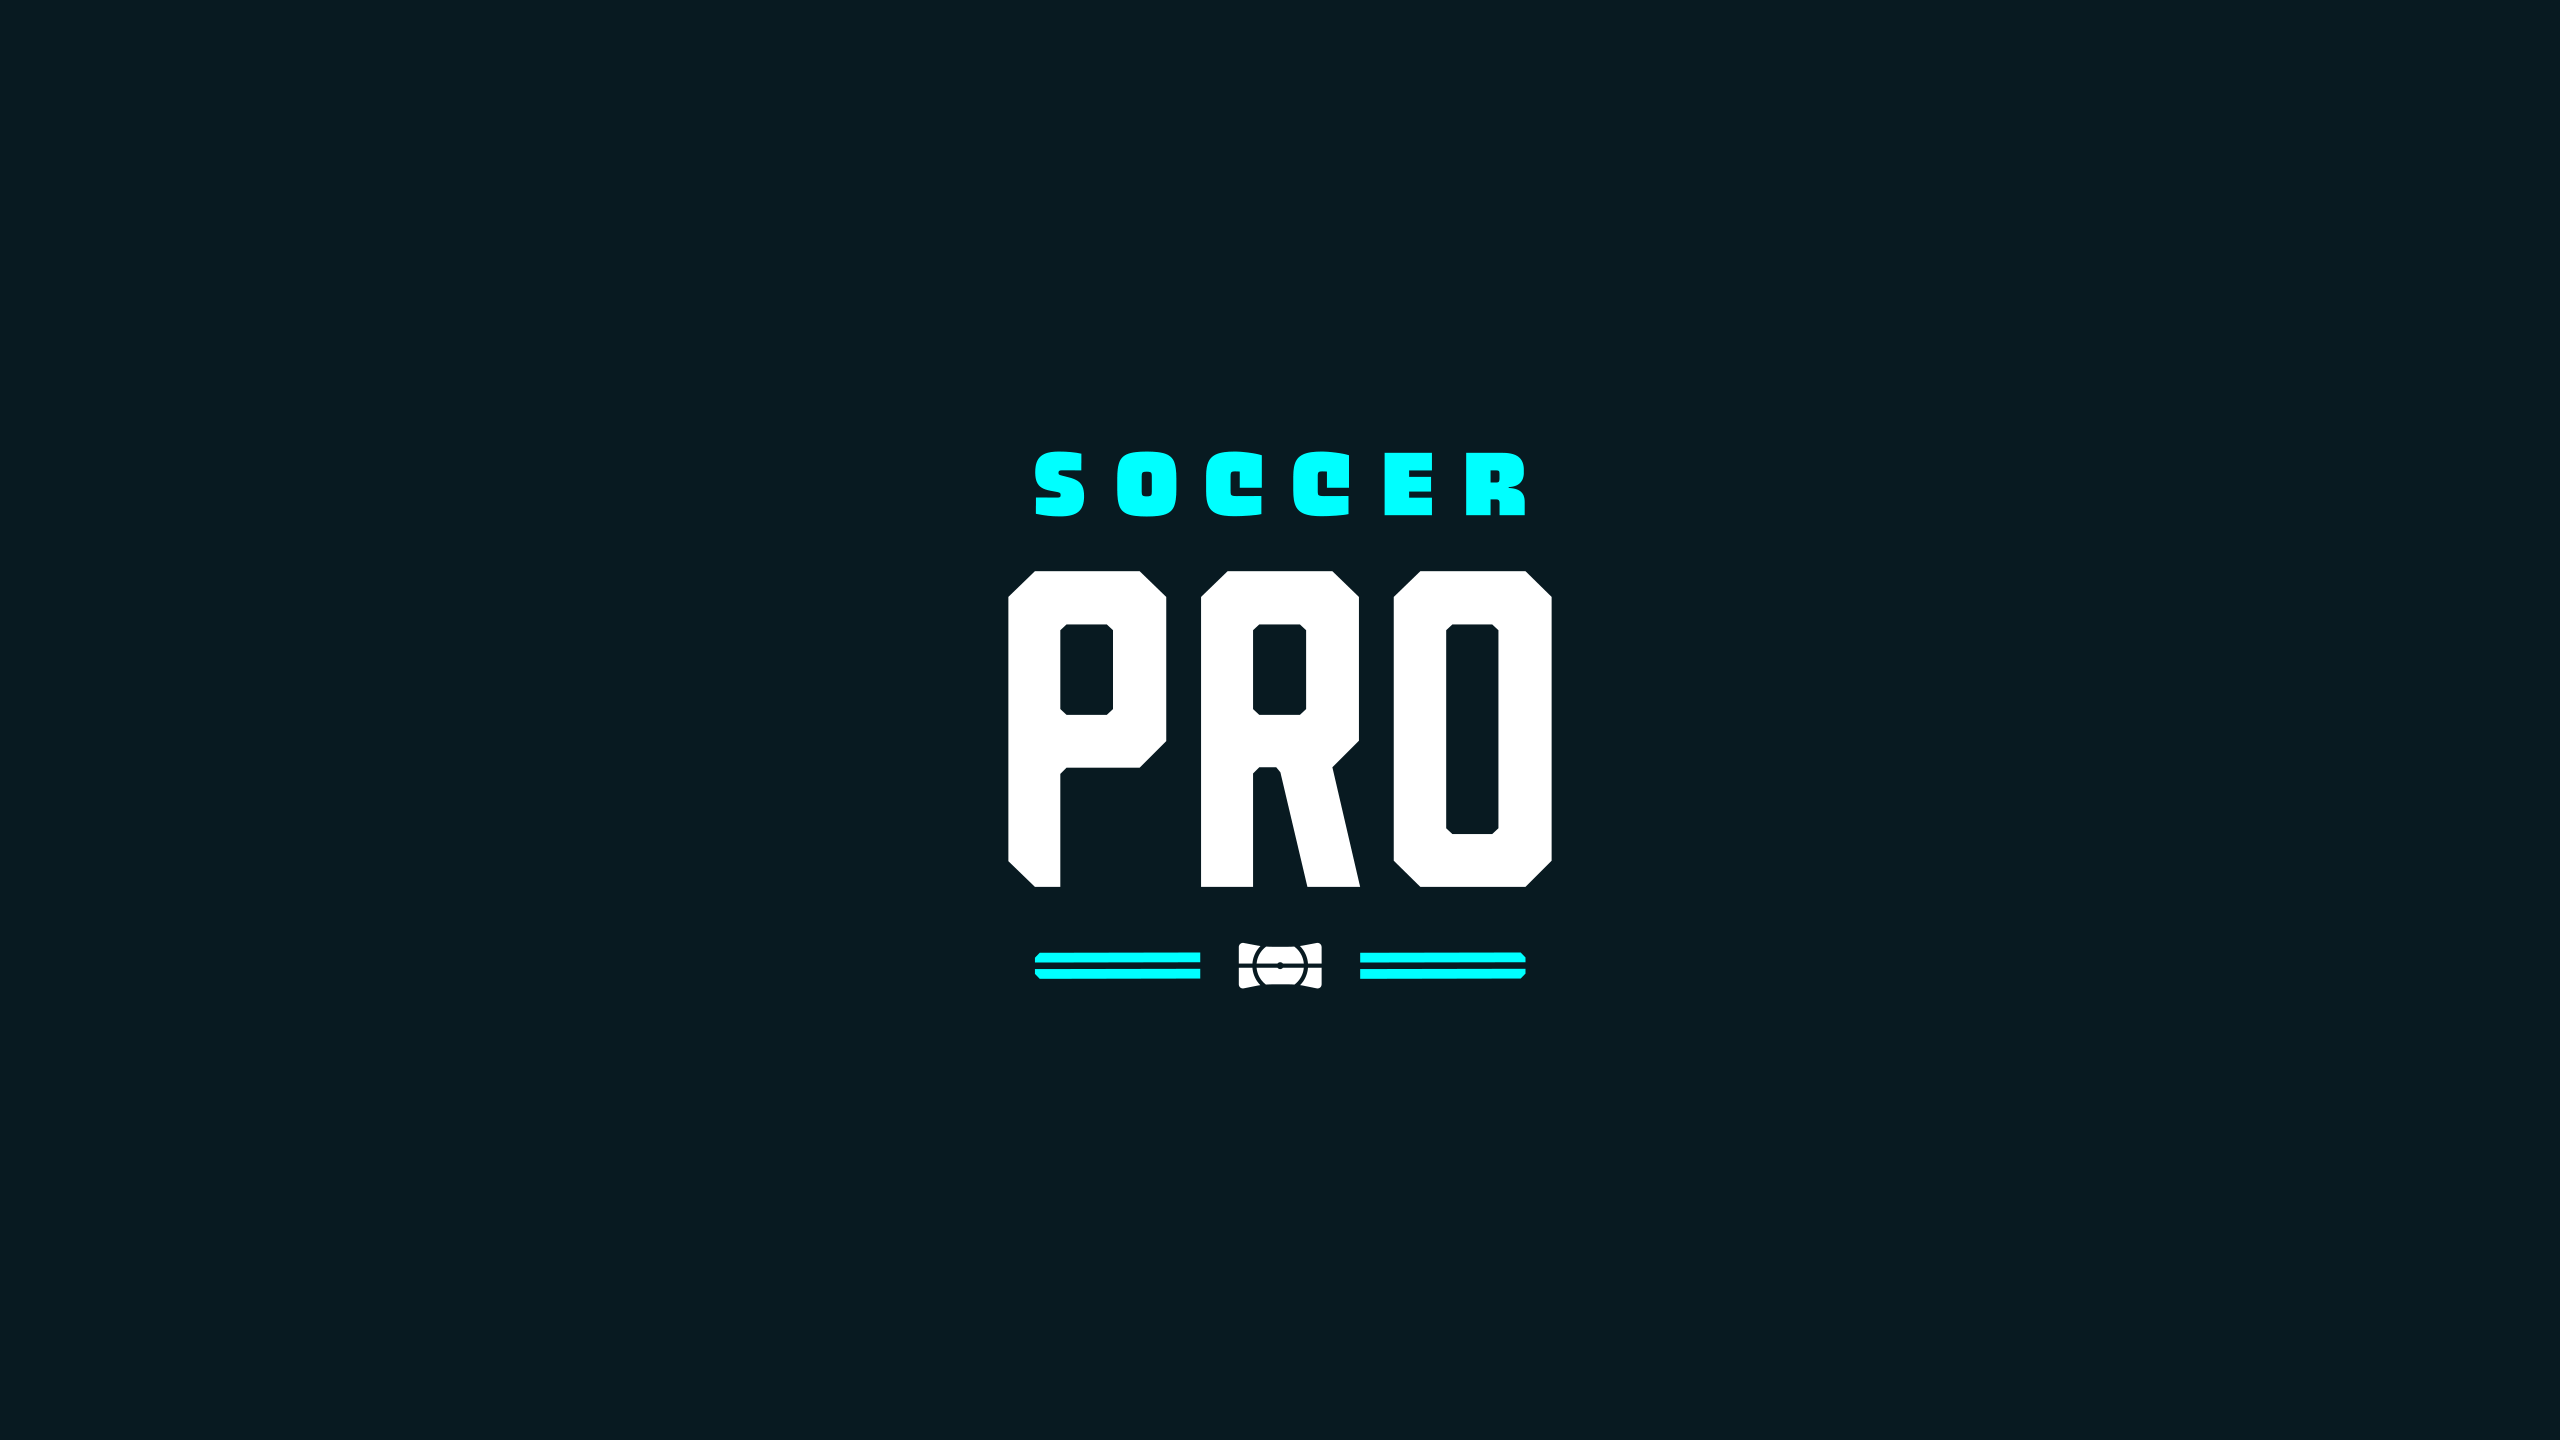 Soccer Pro Branding Logo Knock Out